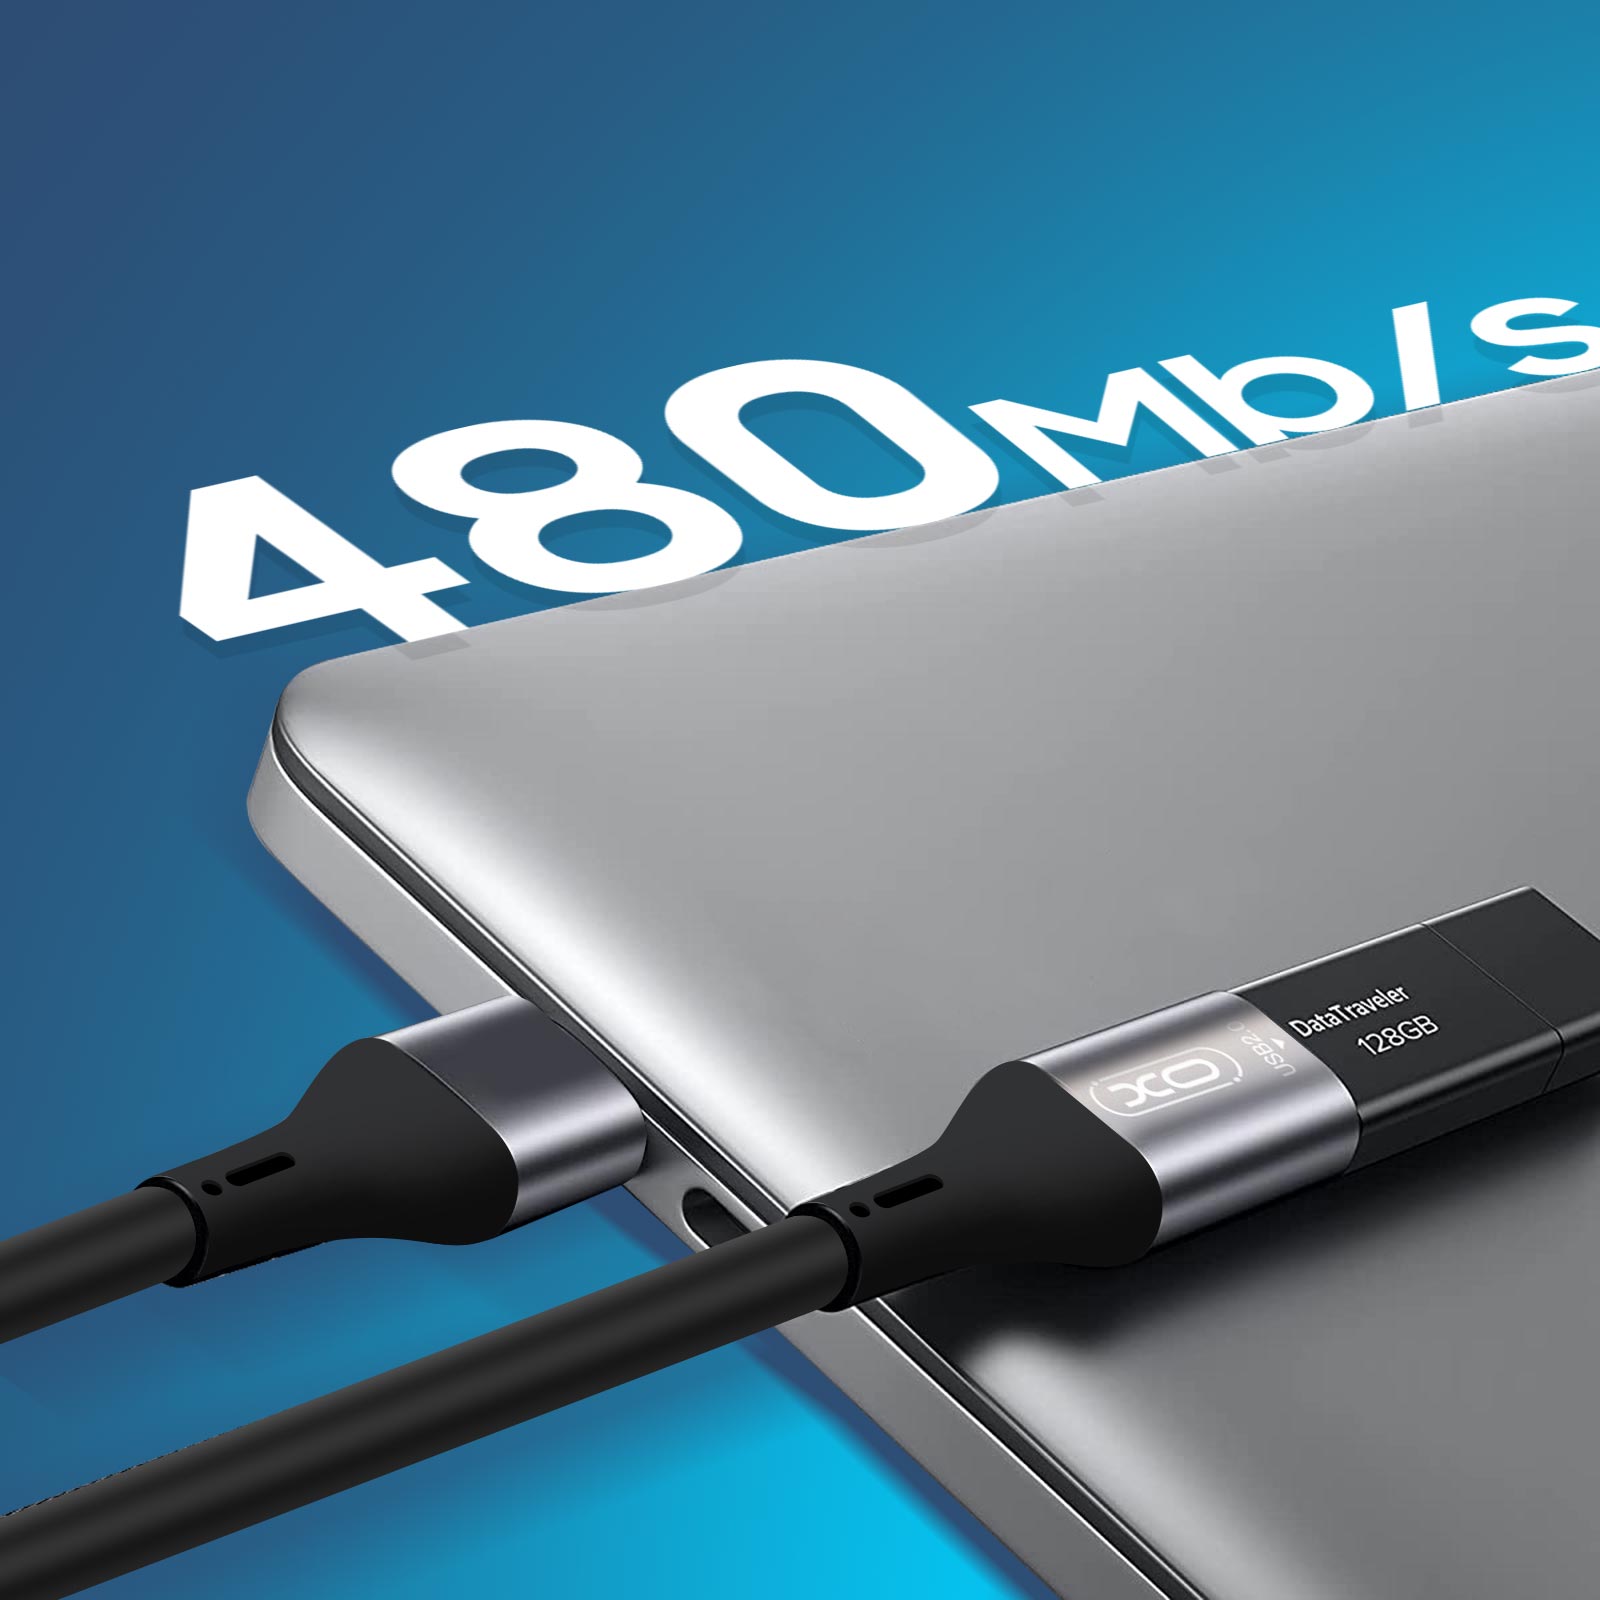 Rallonge USB 2.0 Charge et Transfert de données Câble d'Extension 3m, XO -  Noir - Français